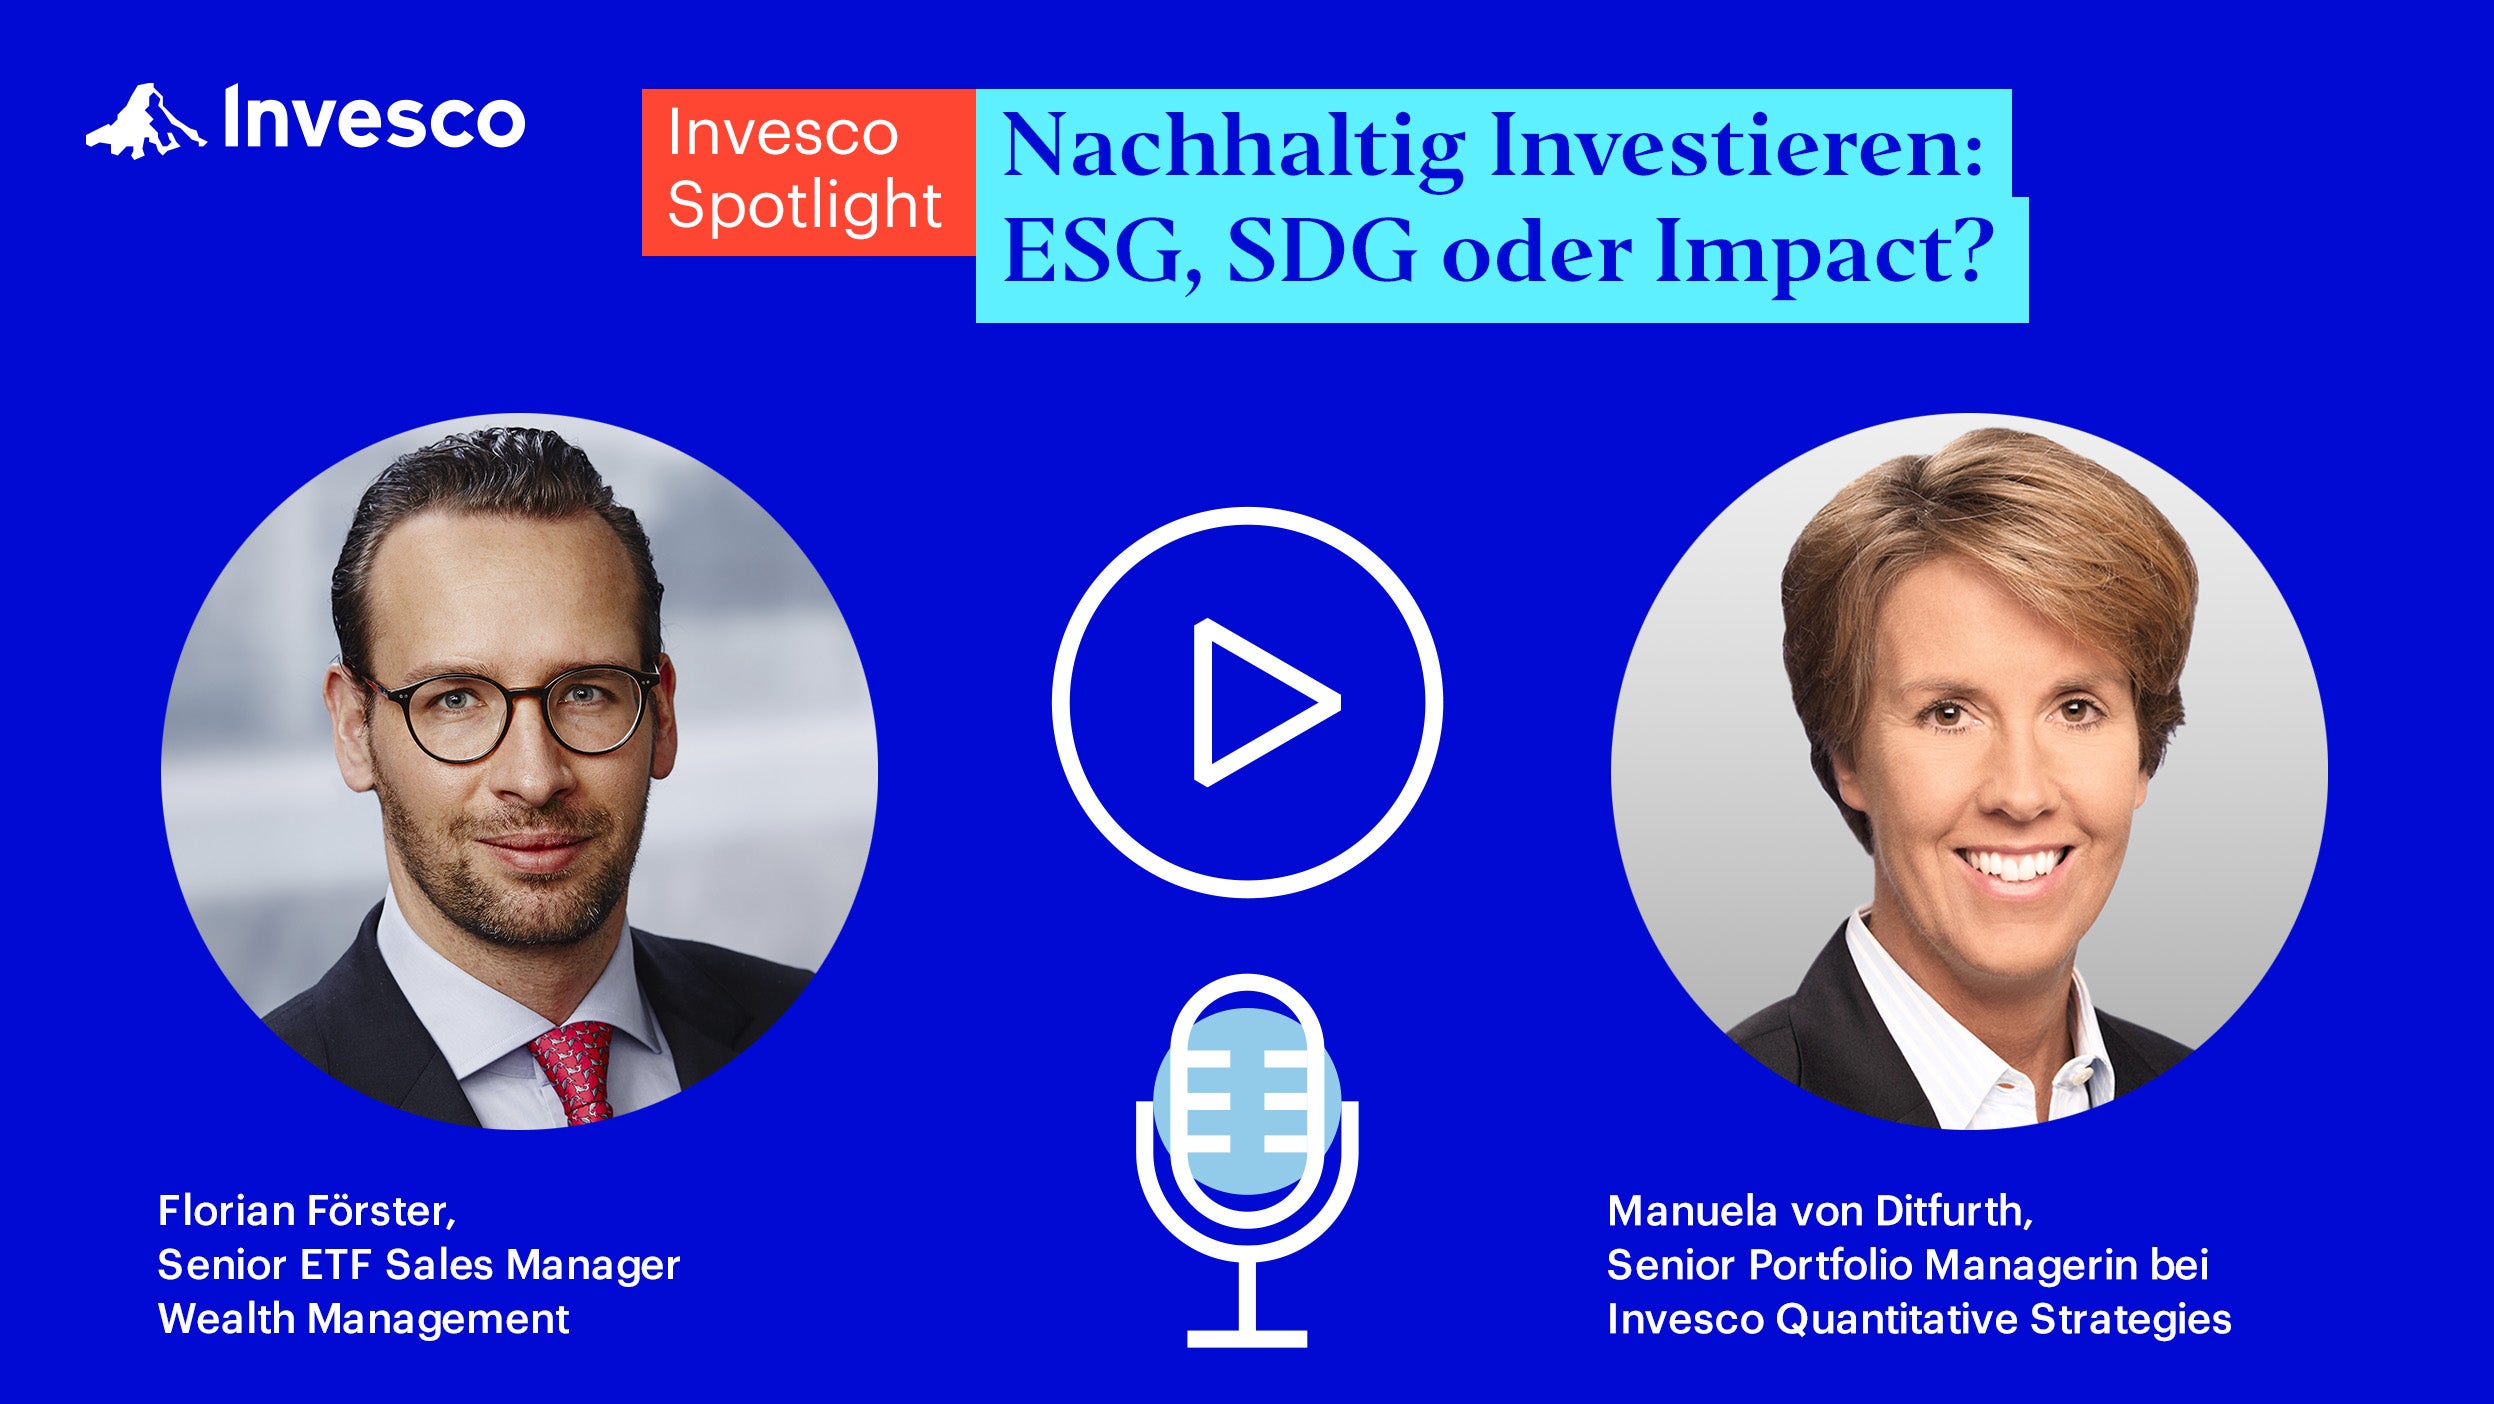 Invesco Spotlight: Nachhaltig Investieren - ESG, SDG oder Impact?